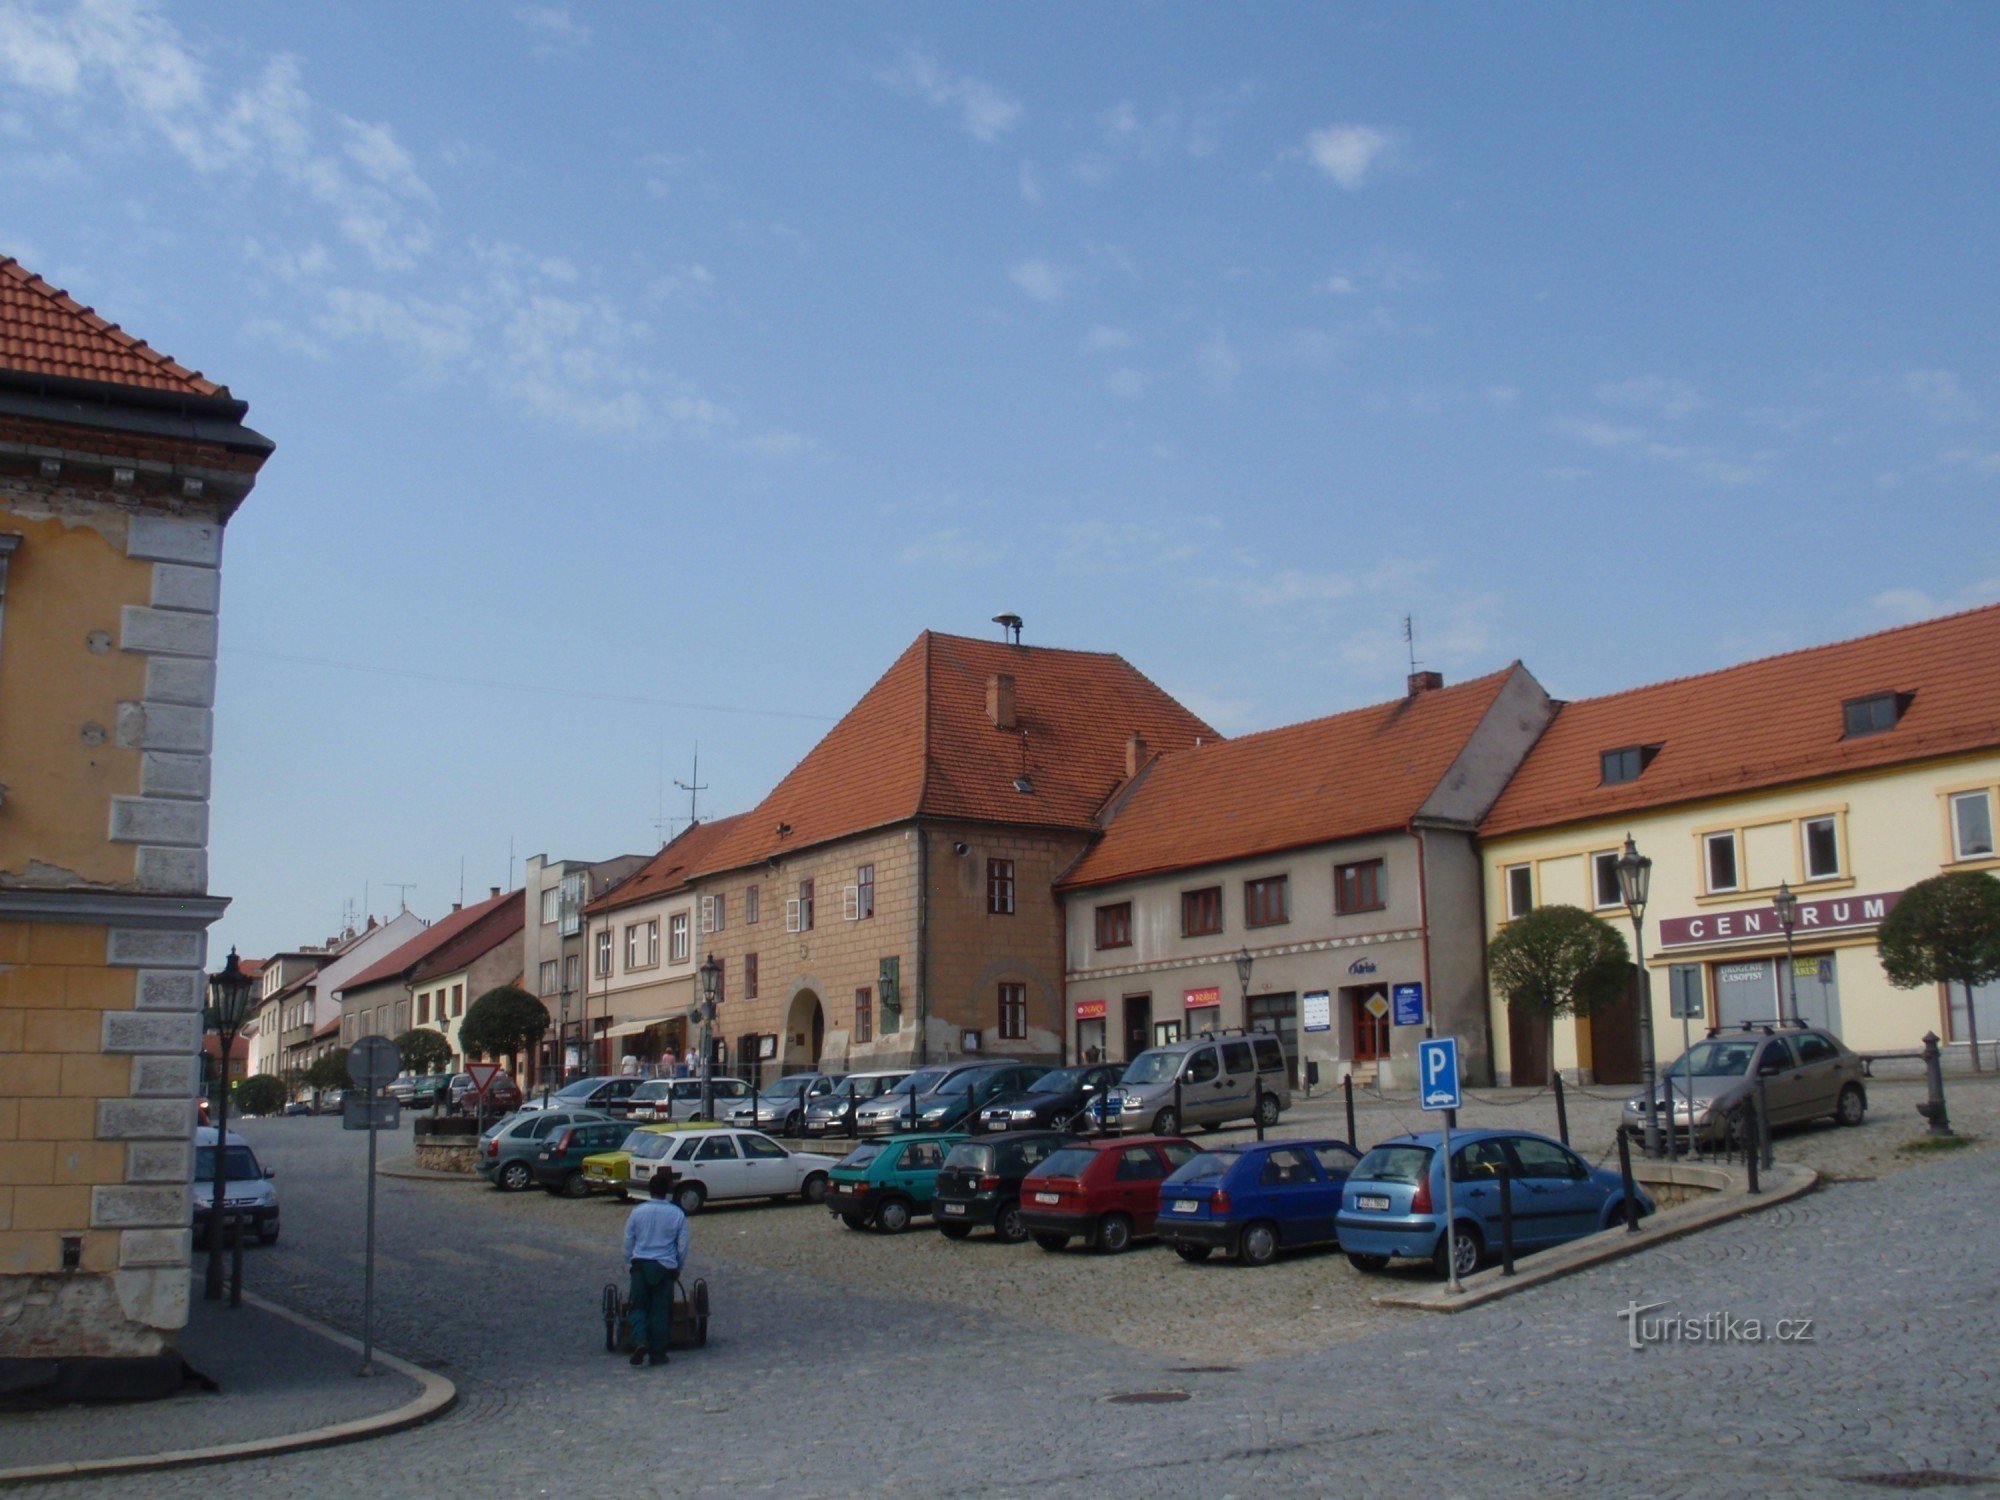 Un mic circuit în jurul Náměšti nad Oslavou